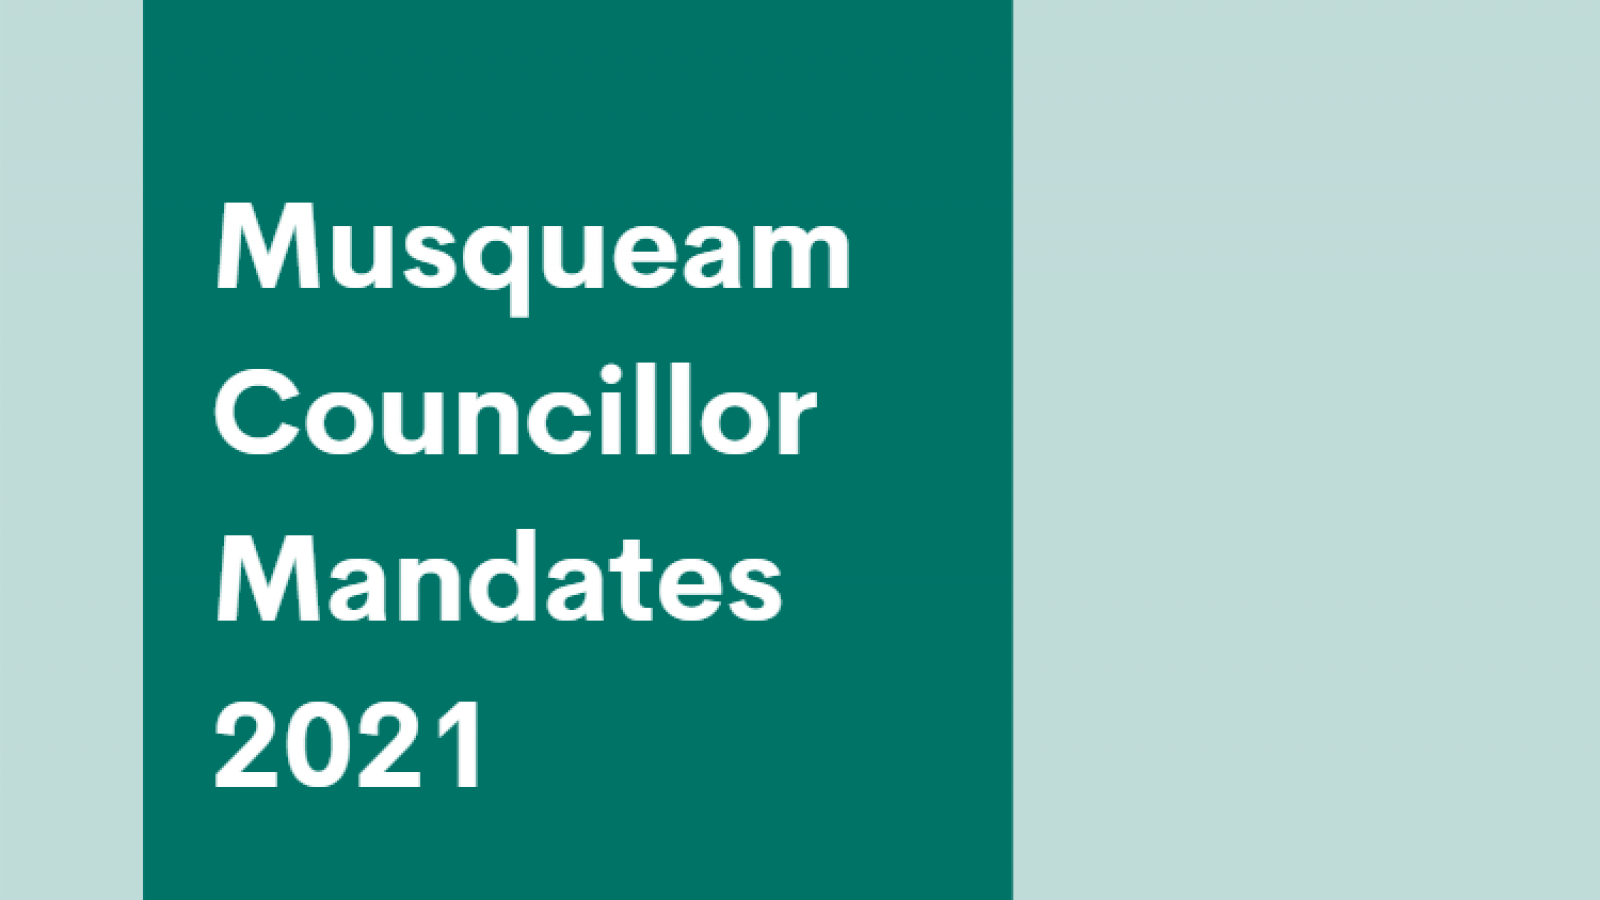 Musqueam Councillor Mandates 2021